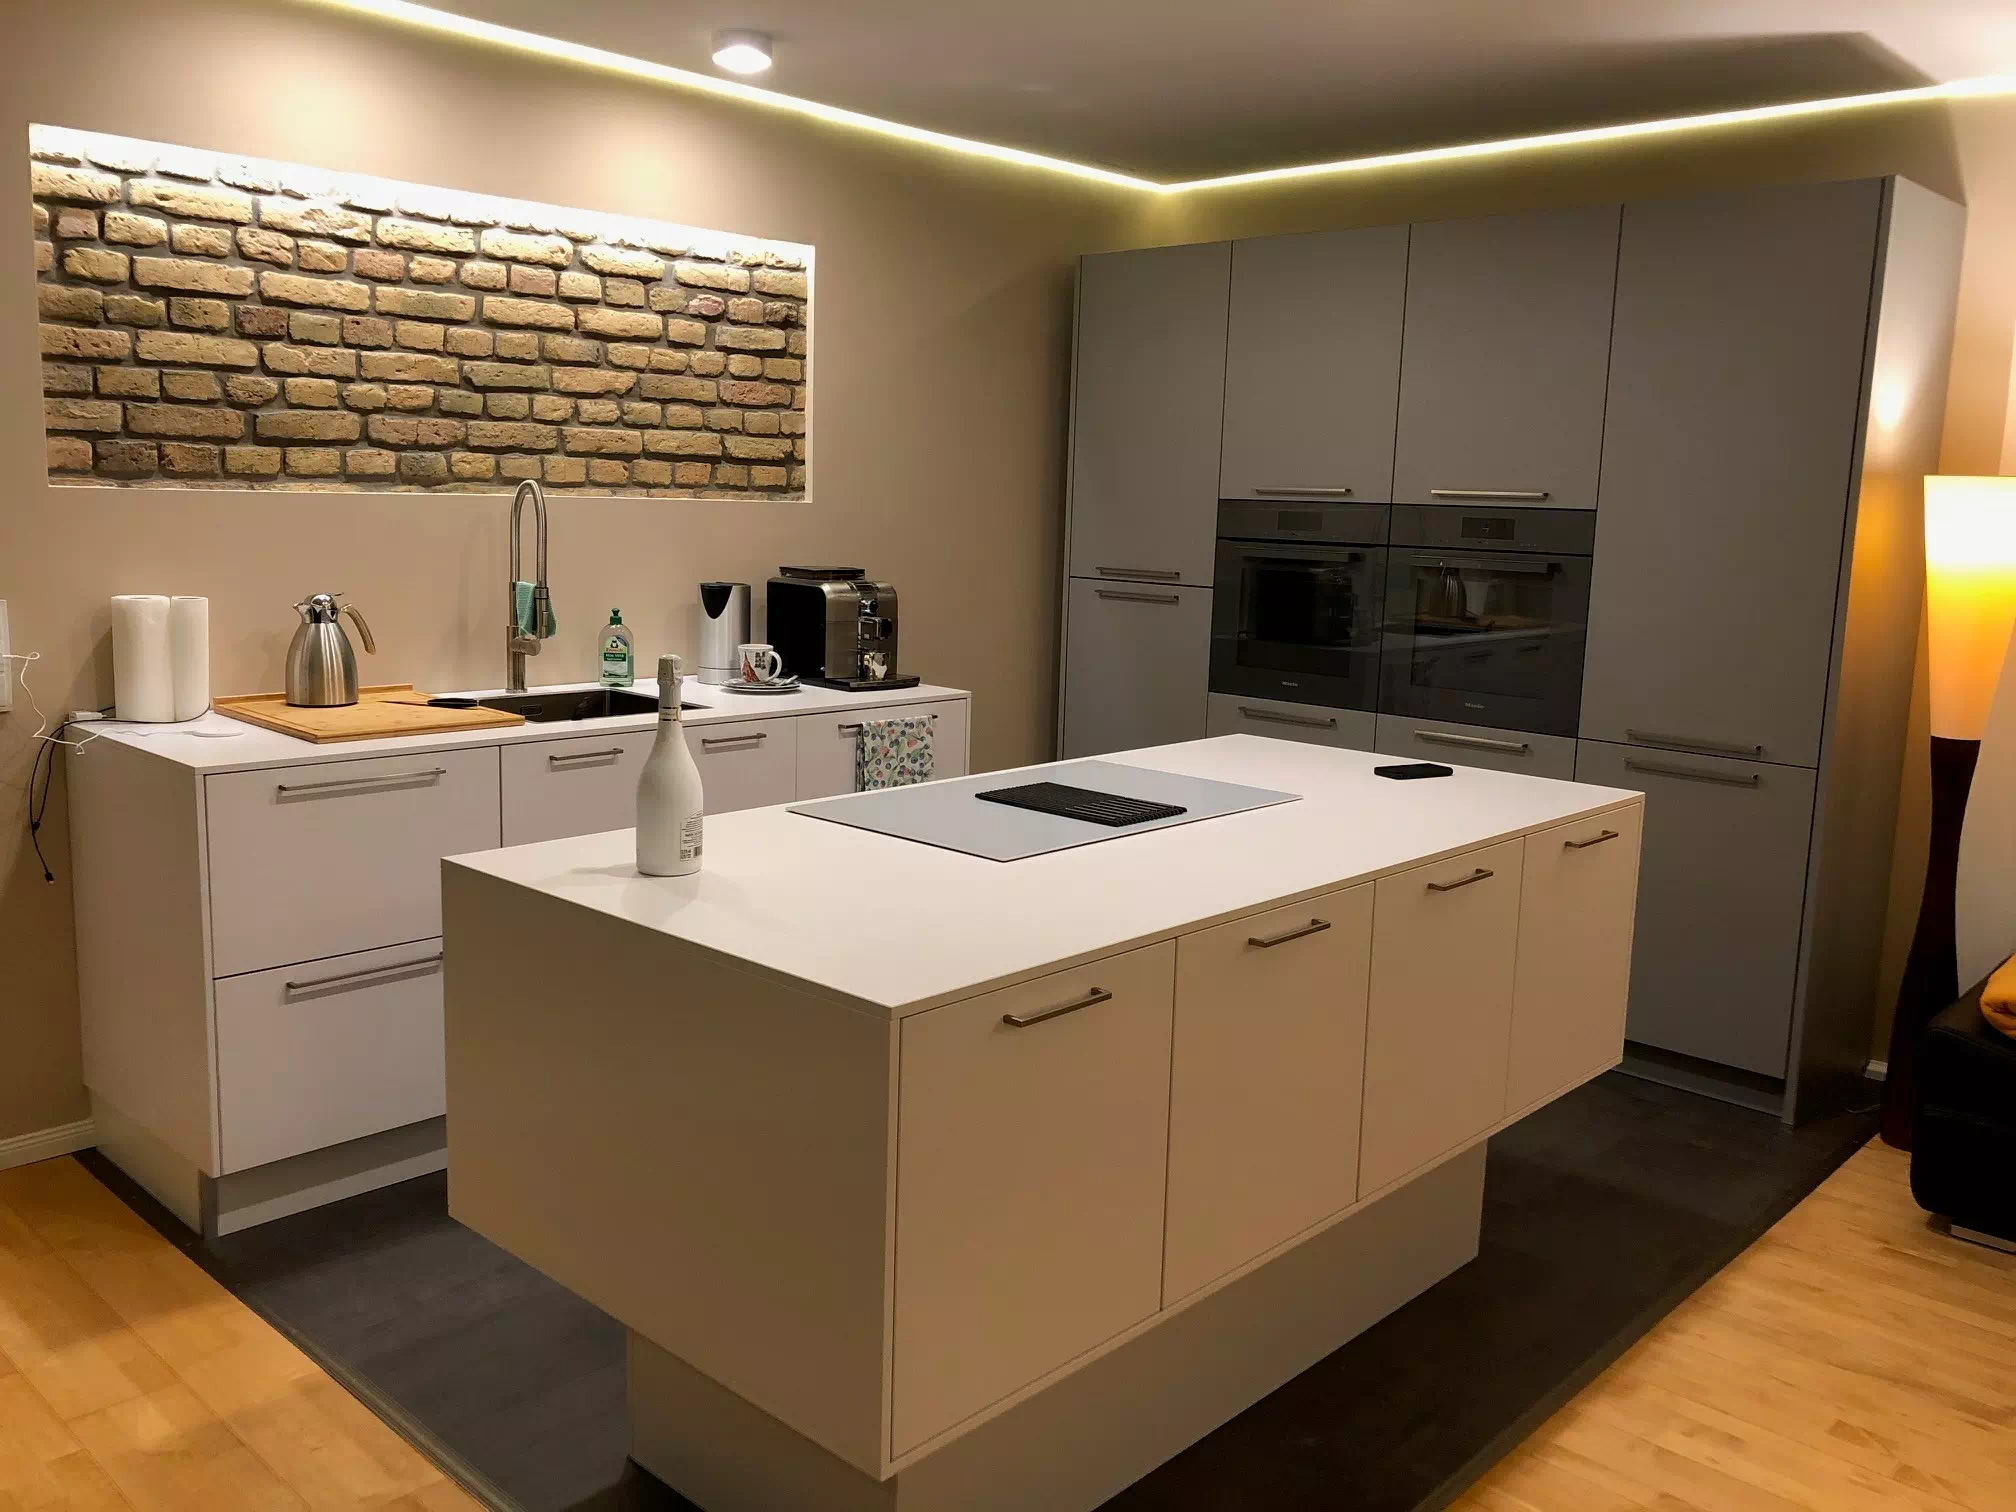 Weiße, moderne Kücheninsel mit grauer Küchenrückwand, in warmen Licht